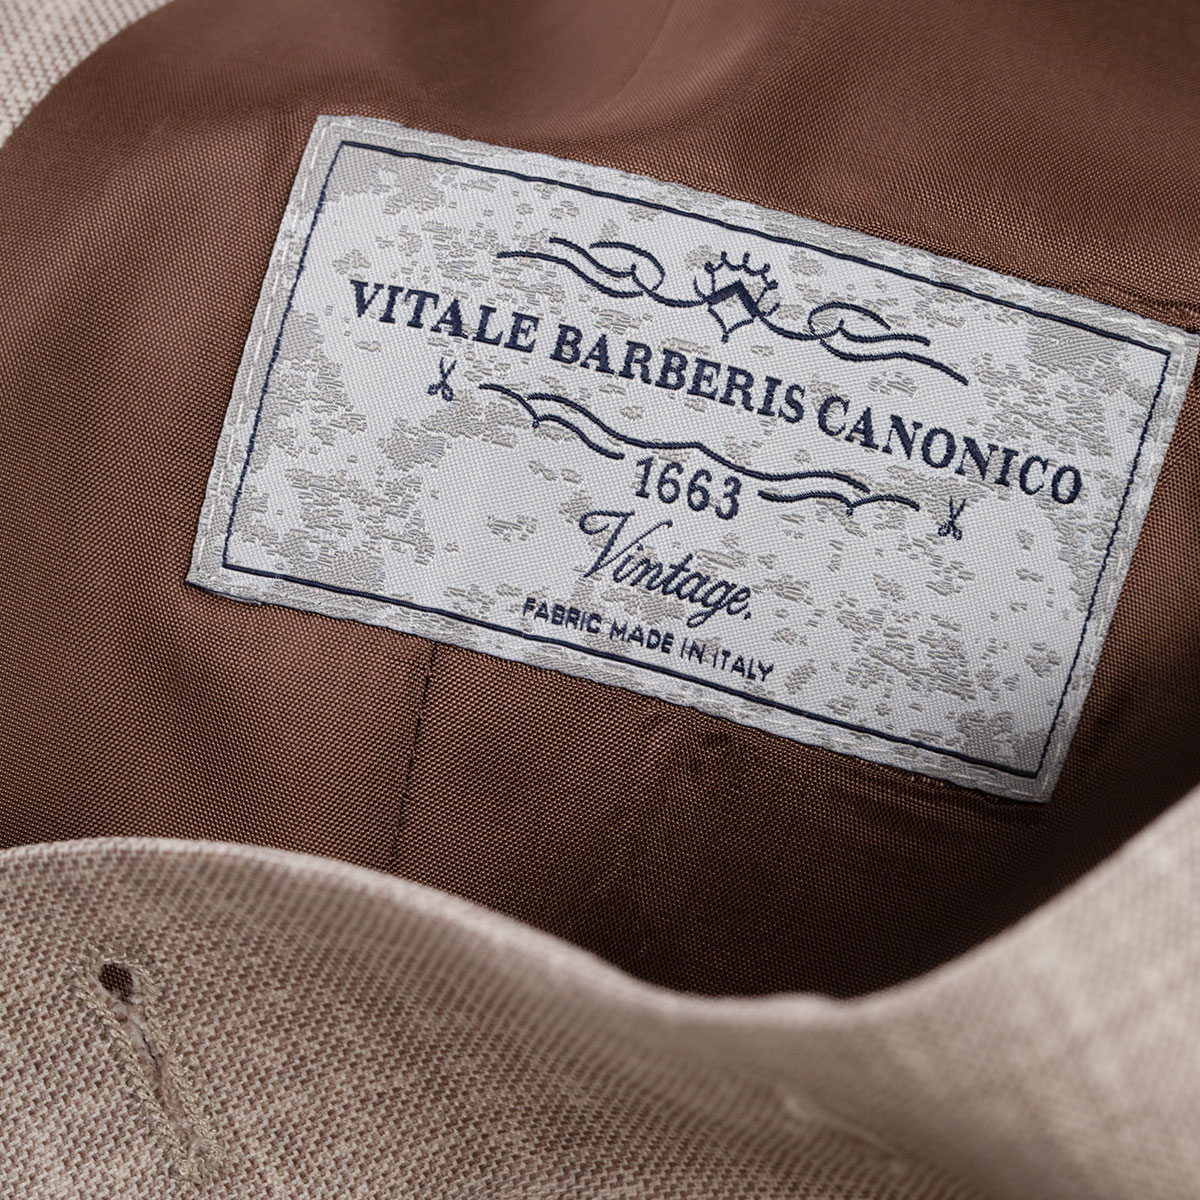 Oberstoff aus reiner Schurwolle von Vitale Barberis Canonico in Italien